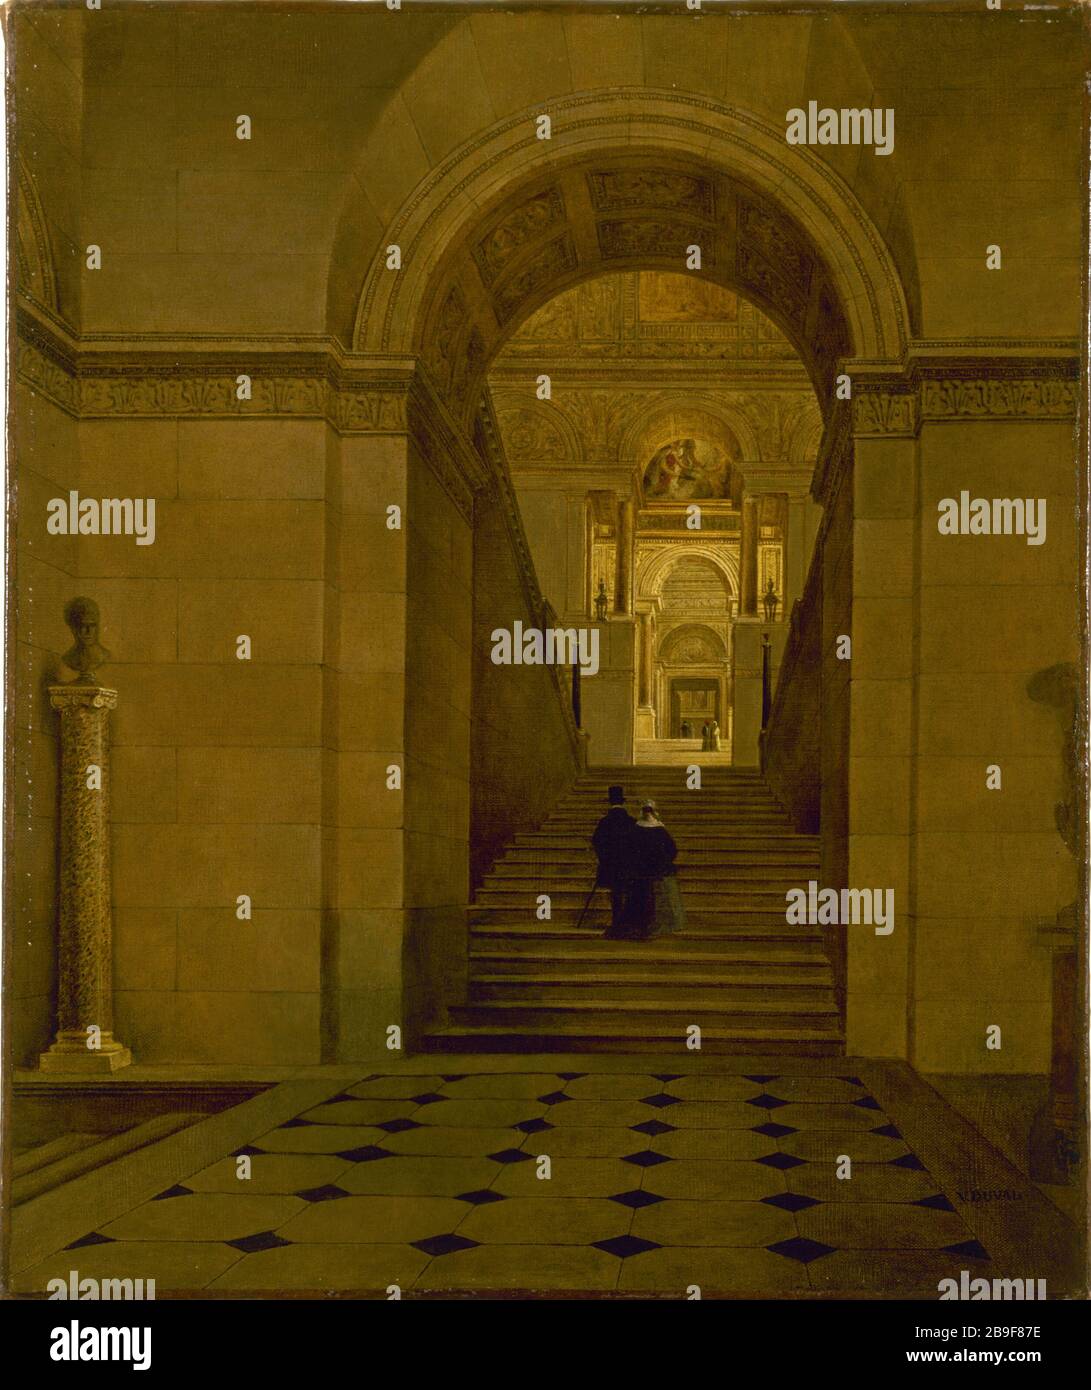 GRAND STAIRS LOUVRE COSTRUITO DA PERCIER VICTOR DUVAL. "Le Grand escier du Louvre, construit par Charles Percier en 1805". Huile sur toile, 1885. Parigi, musée Carnavalet. Foto Stock